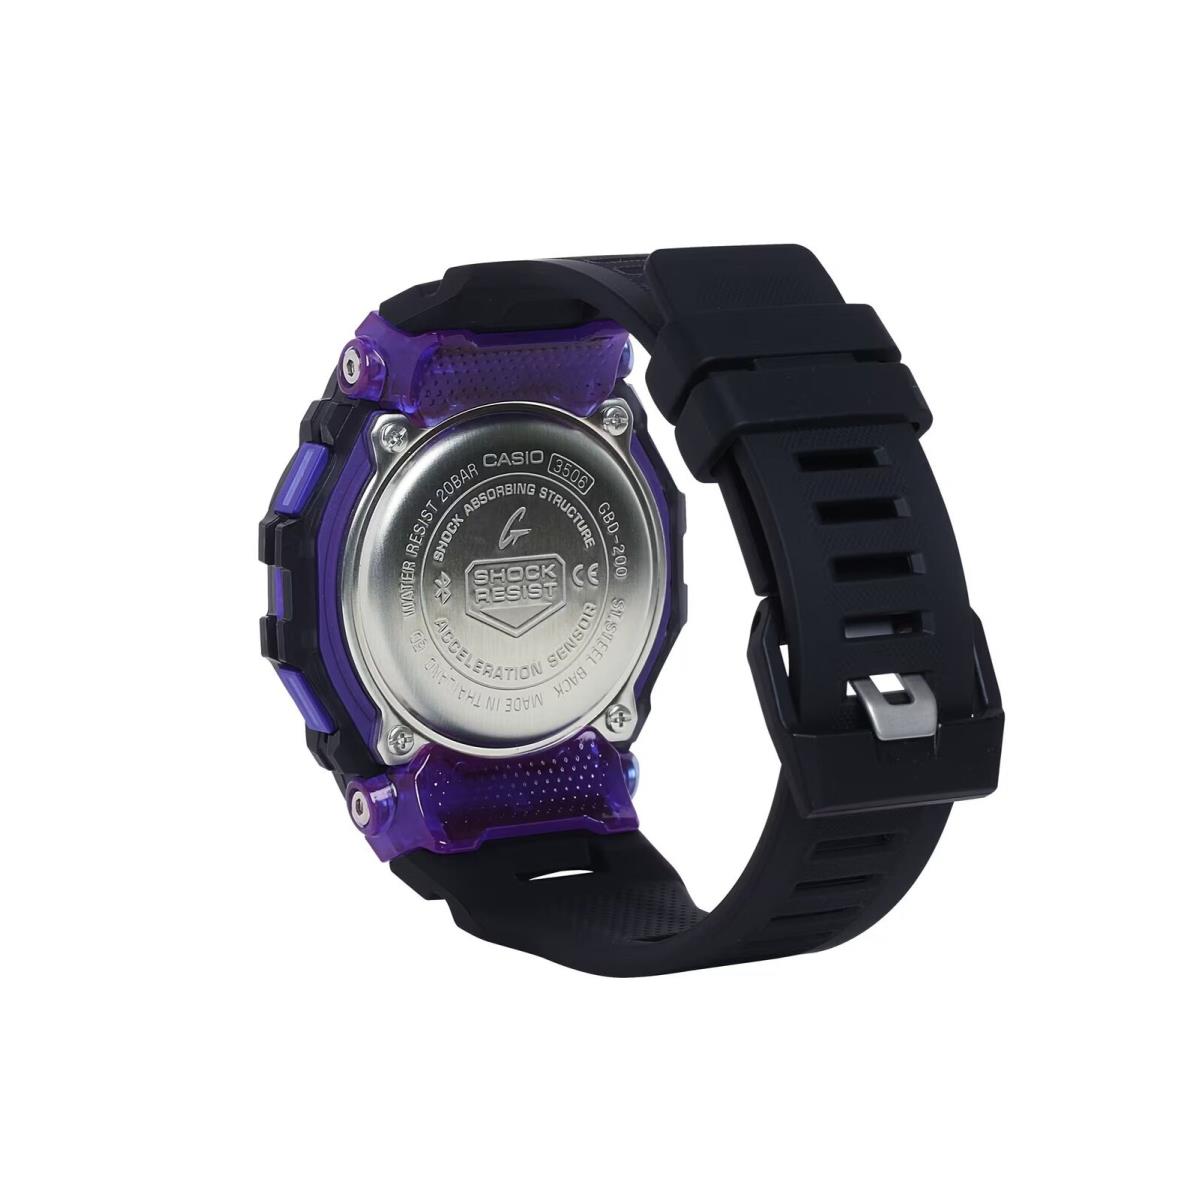 Casio G-shock GBD-200SM-1A6 G-squad Bluetooth Purple/black Digital Watch - Band: Black, Bezel: Black